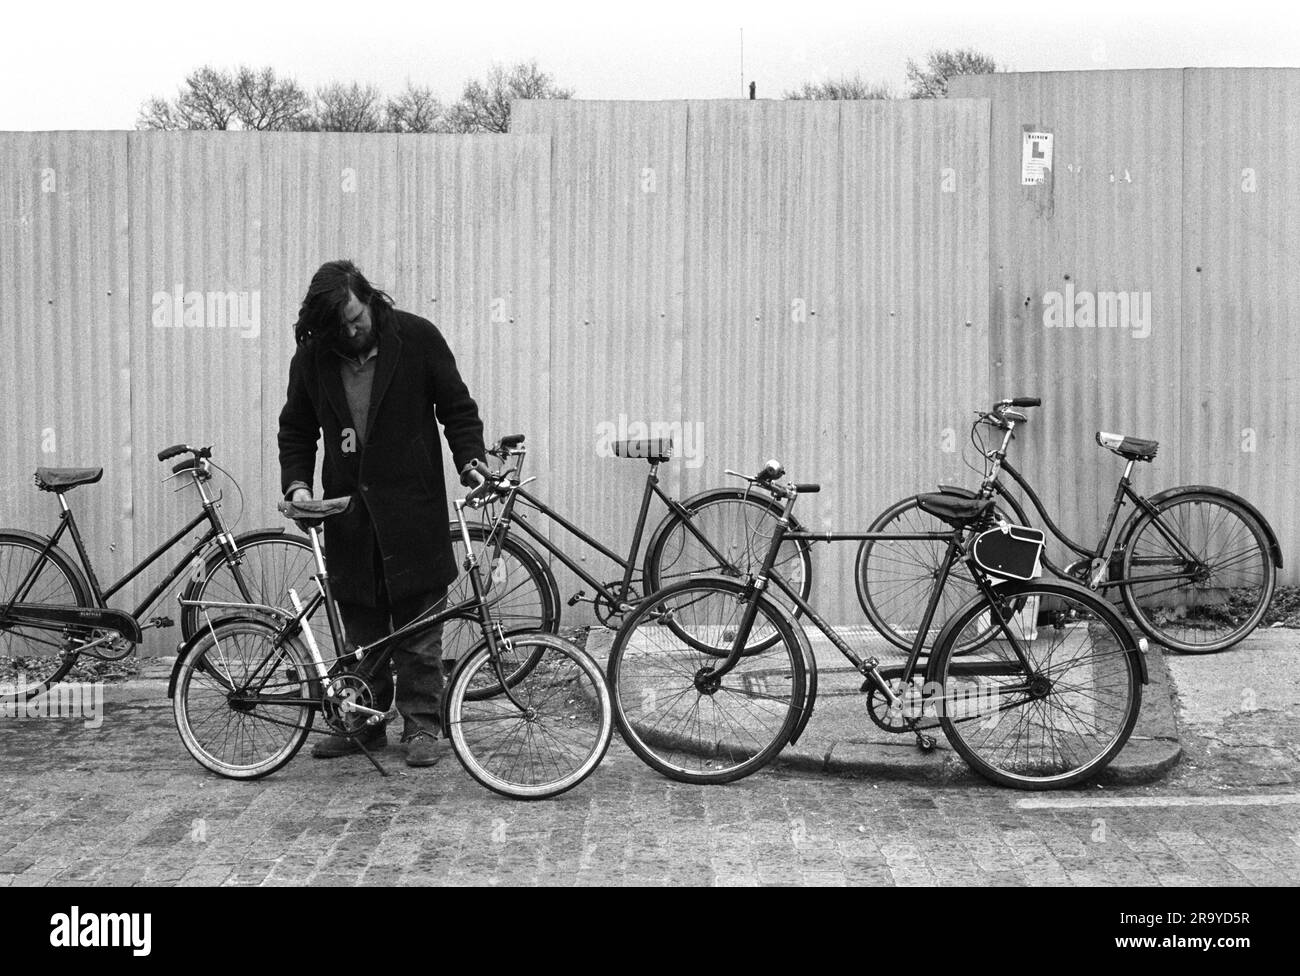 Chilton Street Market Tower Hamlets près de Brick Lane. C'est un marché de vélos à pédales usagés le dimanche matin. Tower Hamlets, Londres, Angleterre vers 1974. ANNÉES 1970 ROYAUME-UNI HOMER SYKES Banque D'Images